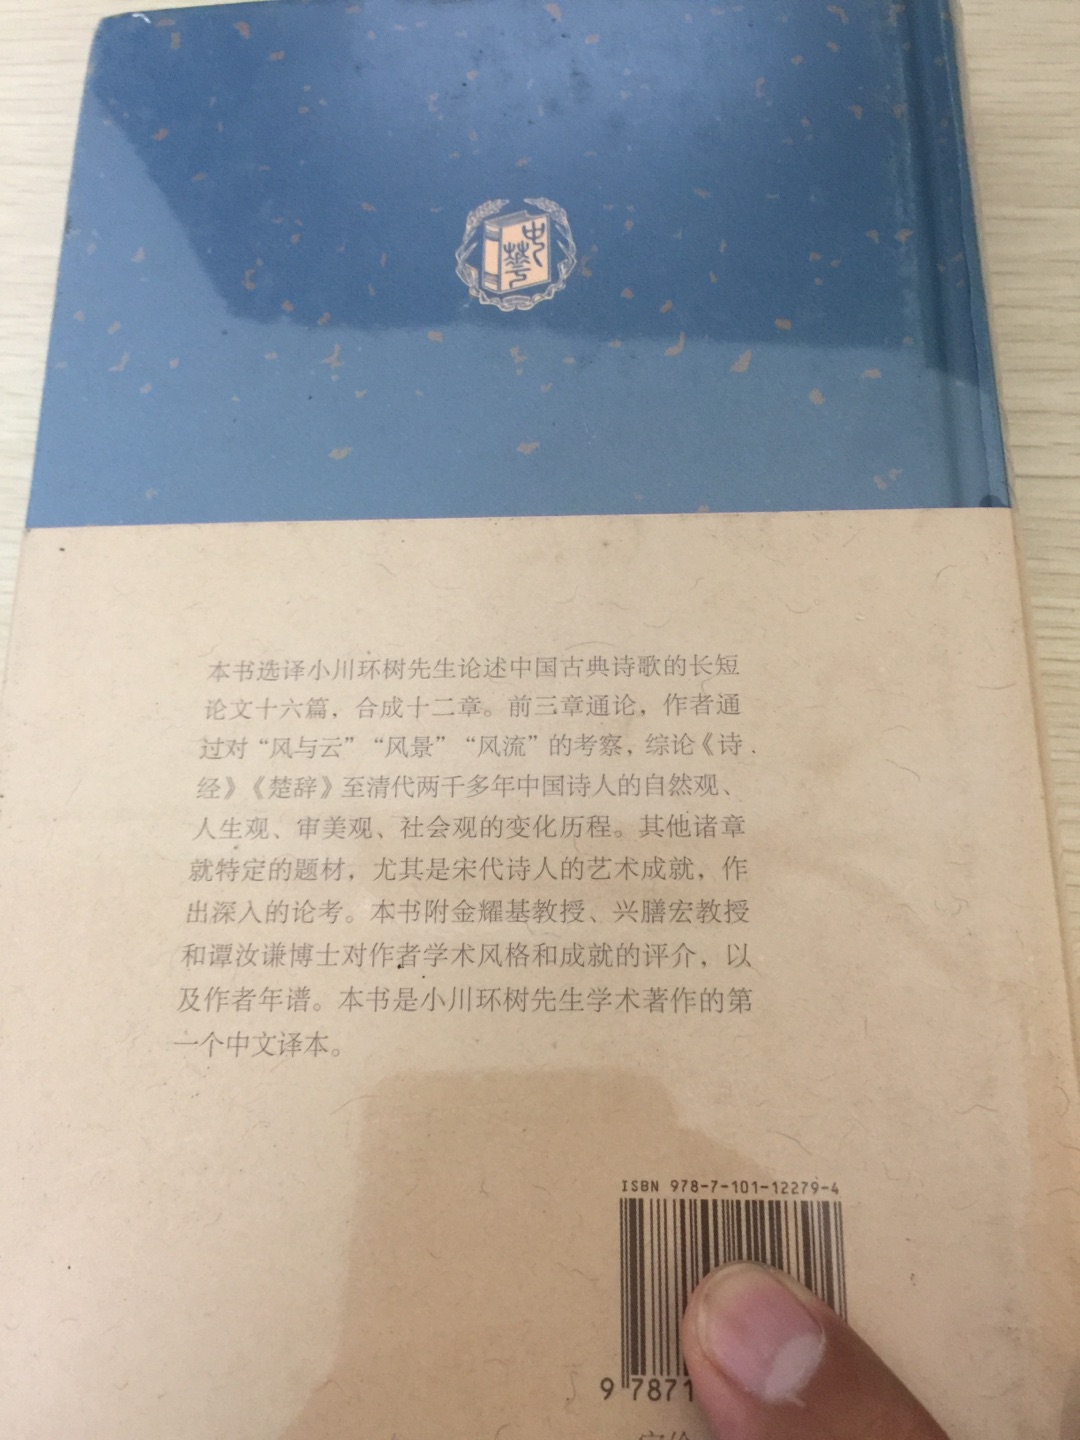 钱宾四先生学术文化讲座之《论中国诗》，来看看别的国家作者对我们的诗歌的论调。这套书都是小16开硬壳精装，印刷精美，值得阅读和收藏。